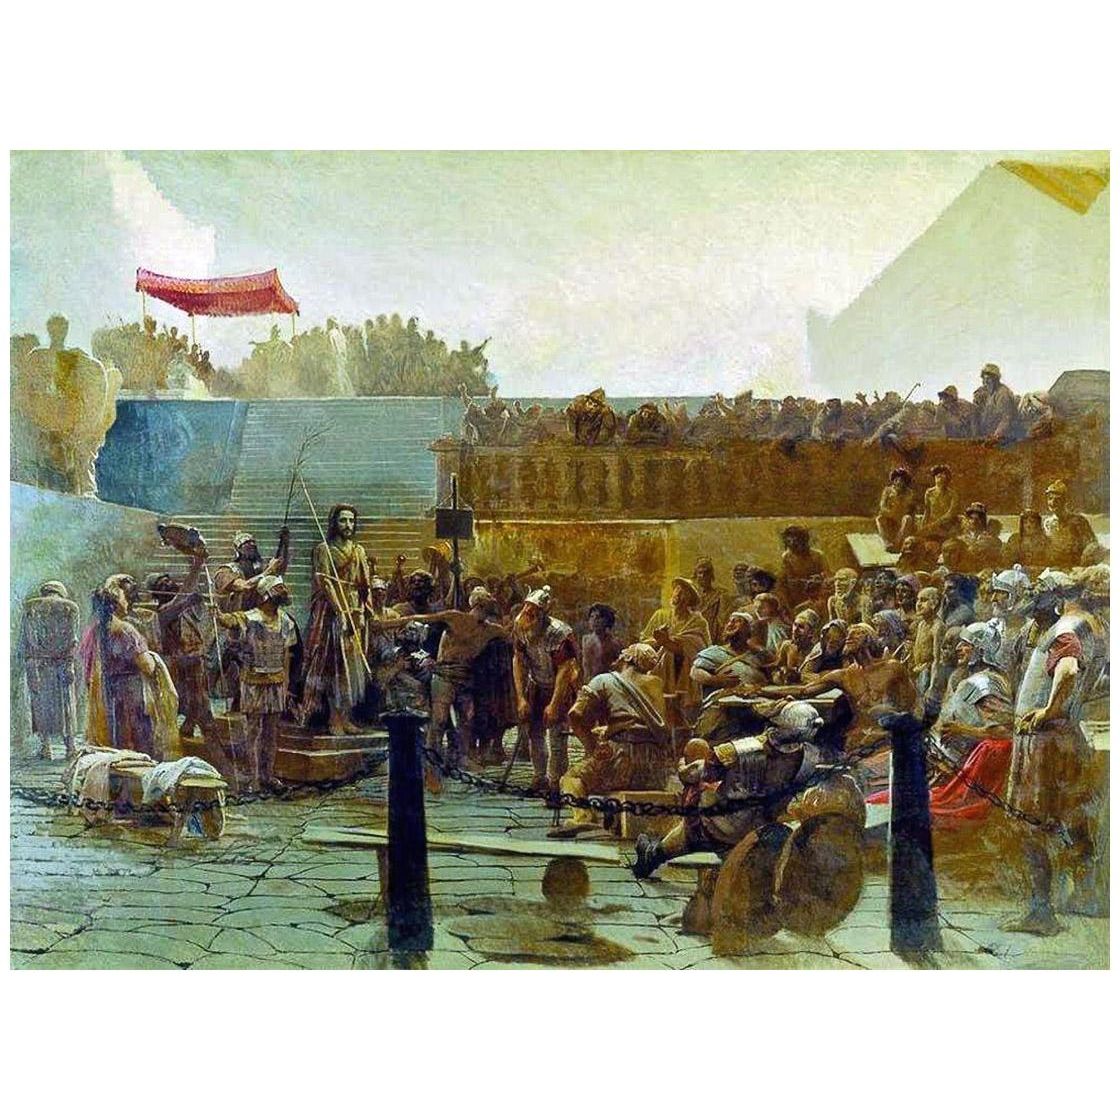 Иван Крамской. Хохот. 1879. Русский музей